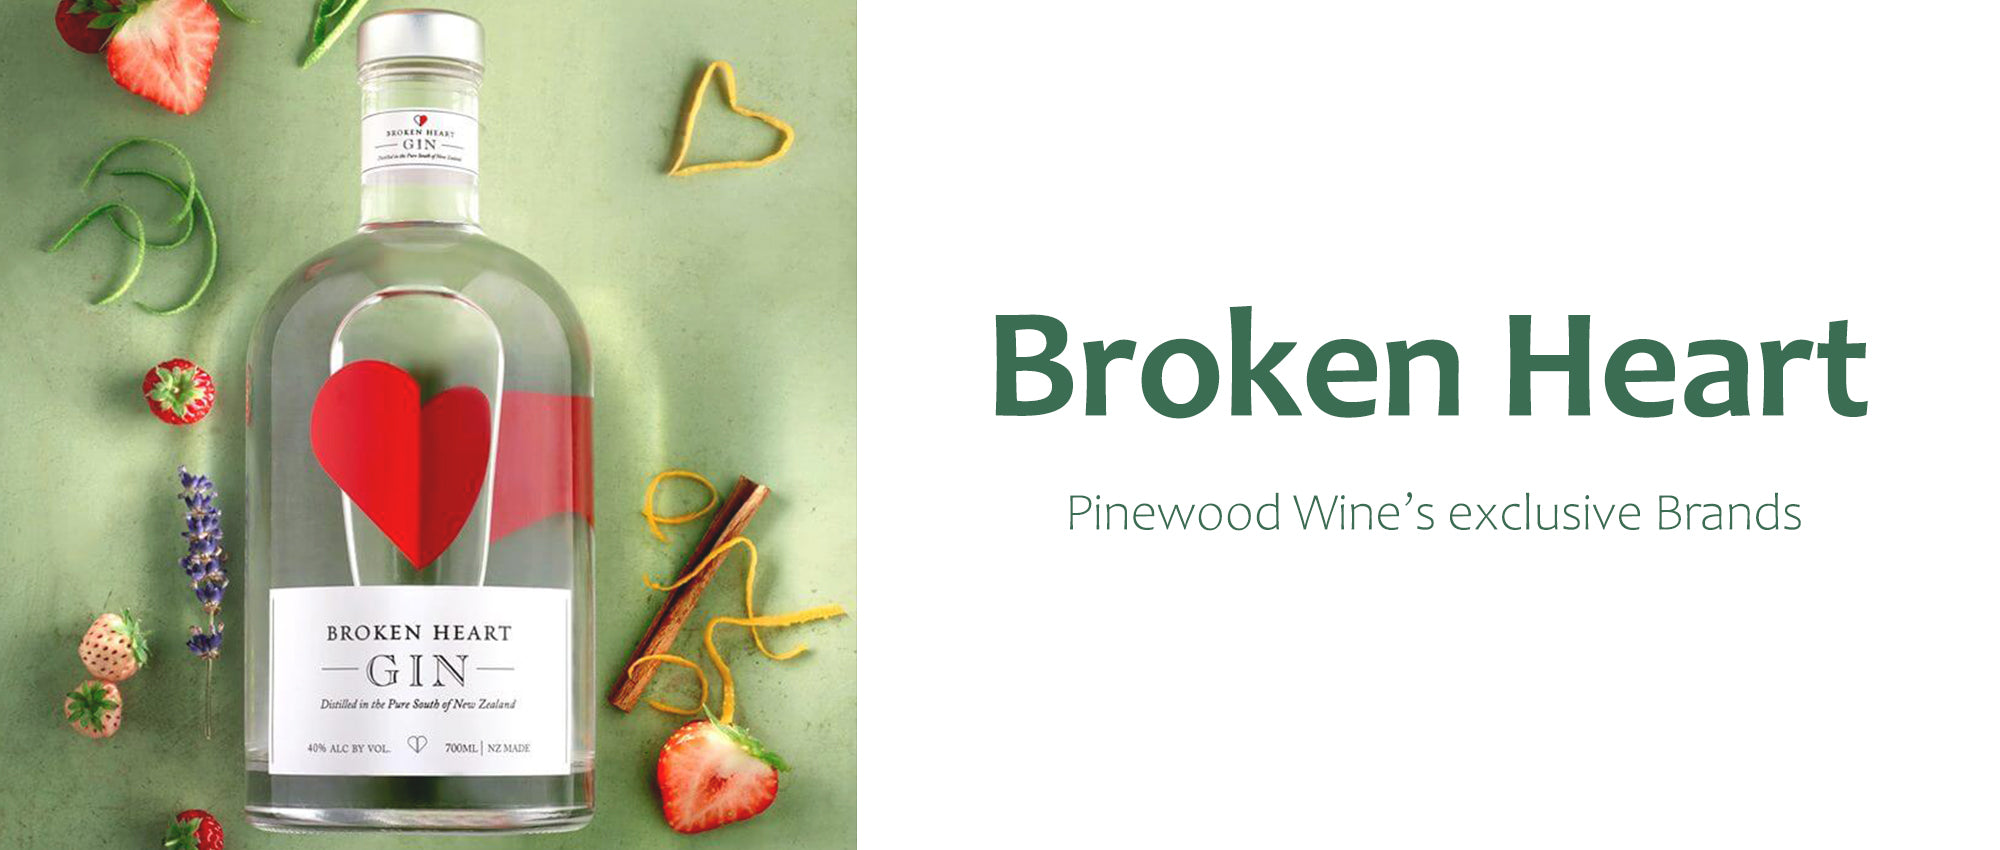 Pinewood Wine: Broken Heart